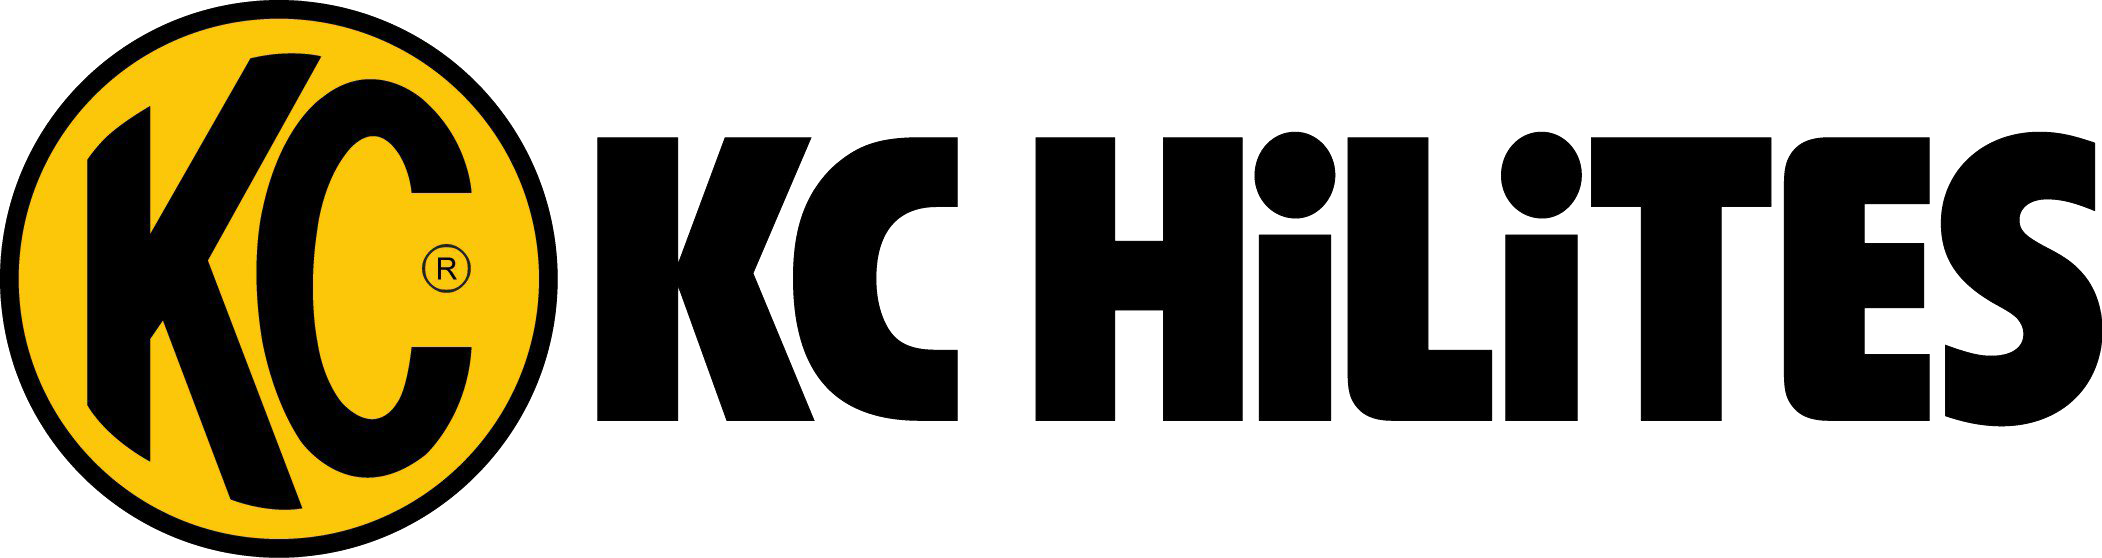 Logo-KCHiLites